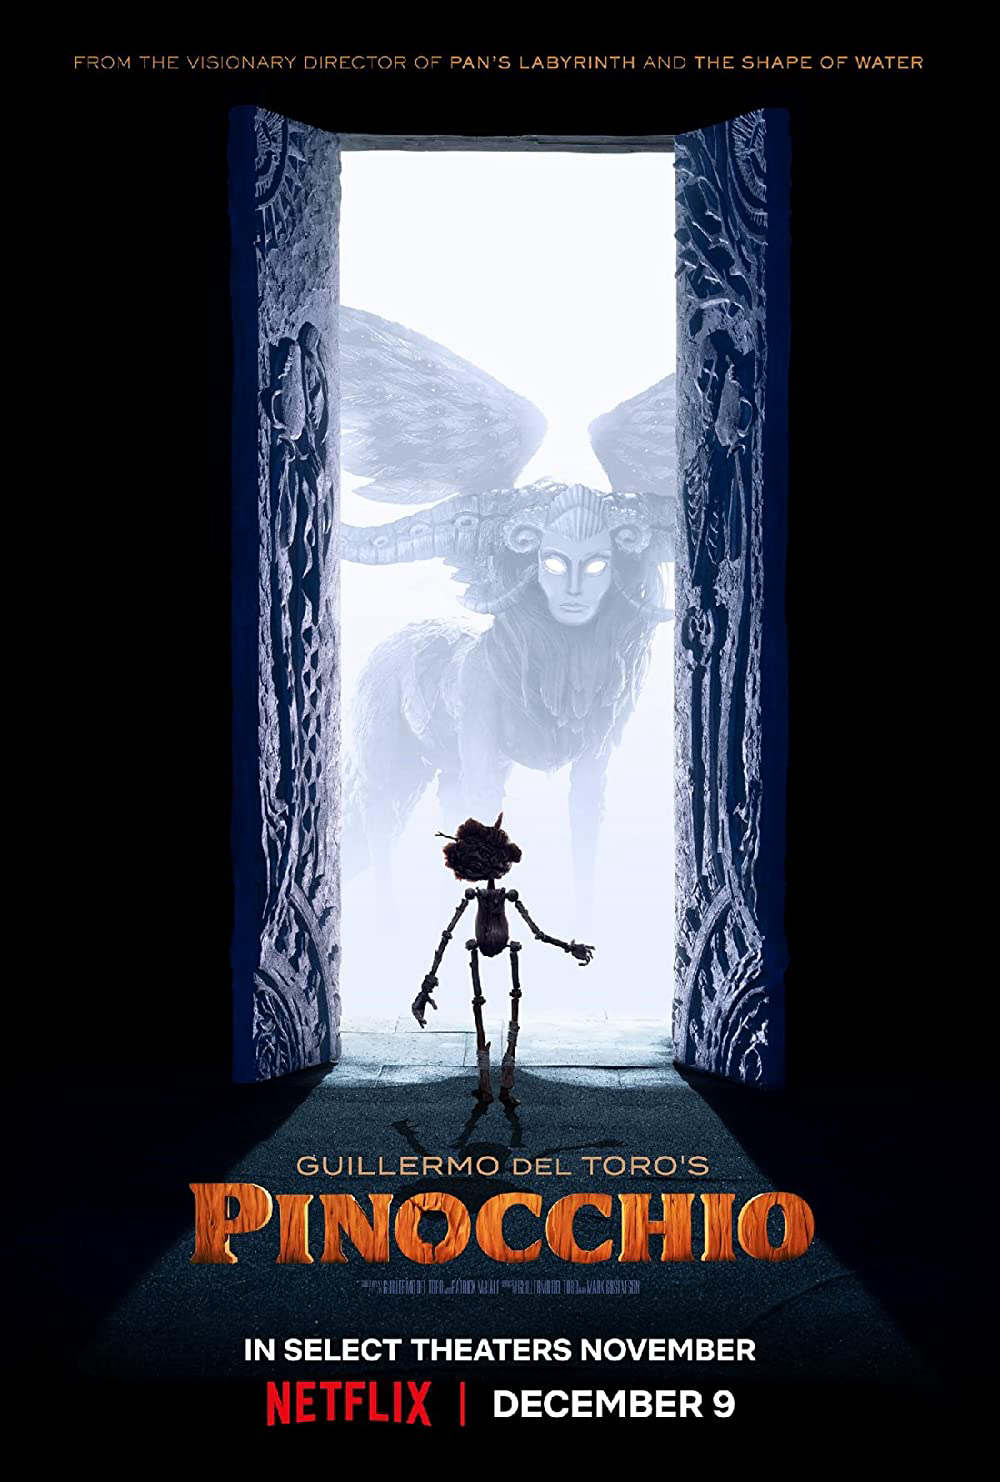 Poster Phim Pinocchio của Guillermo del Toro (Guillermo del Toro’s Pinocchio)